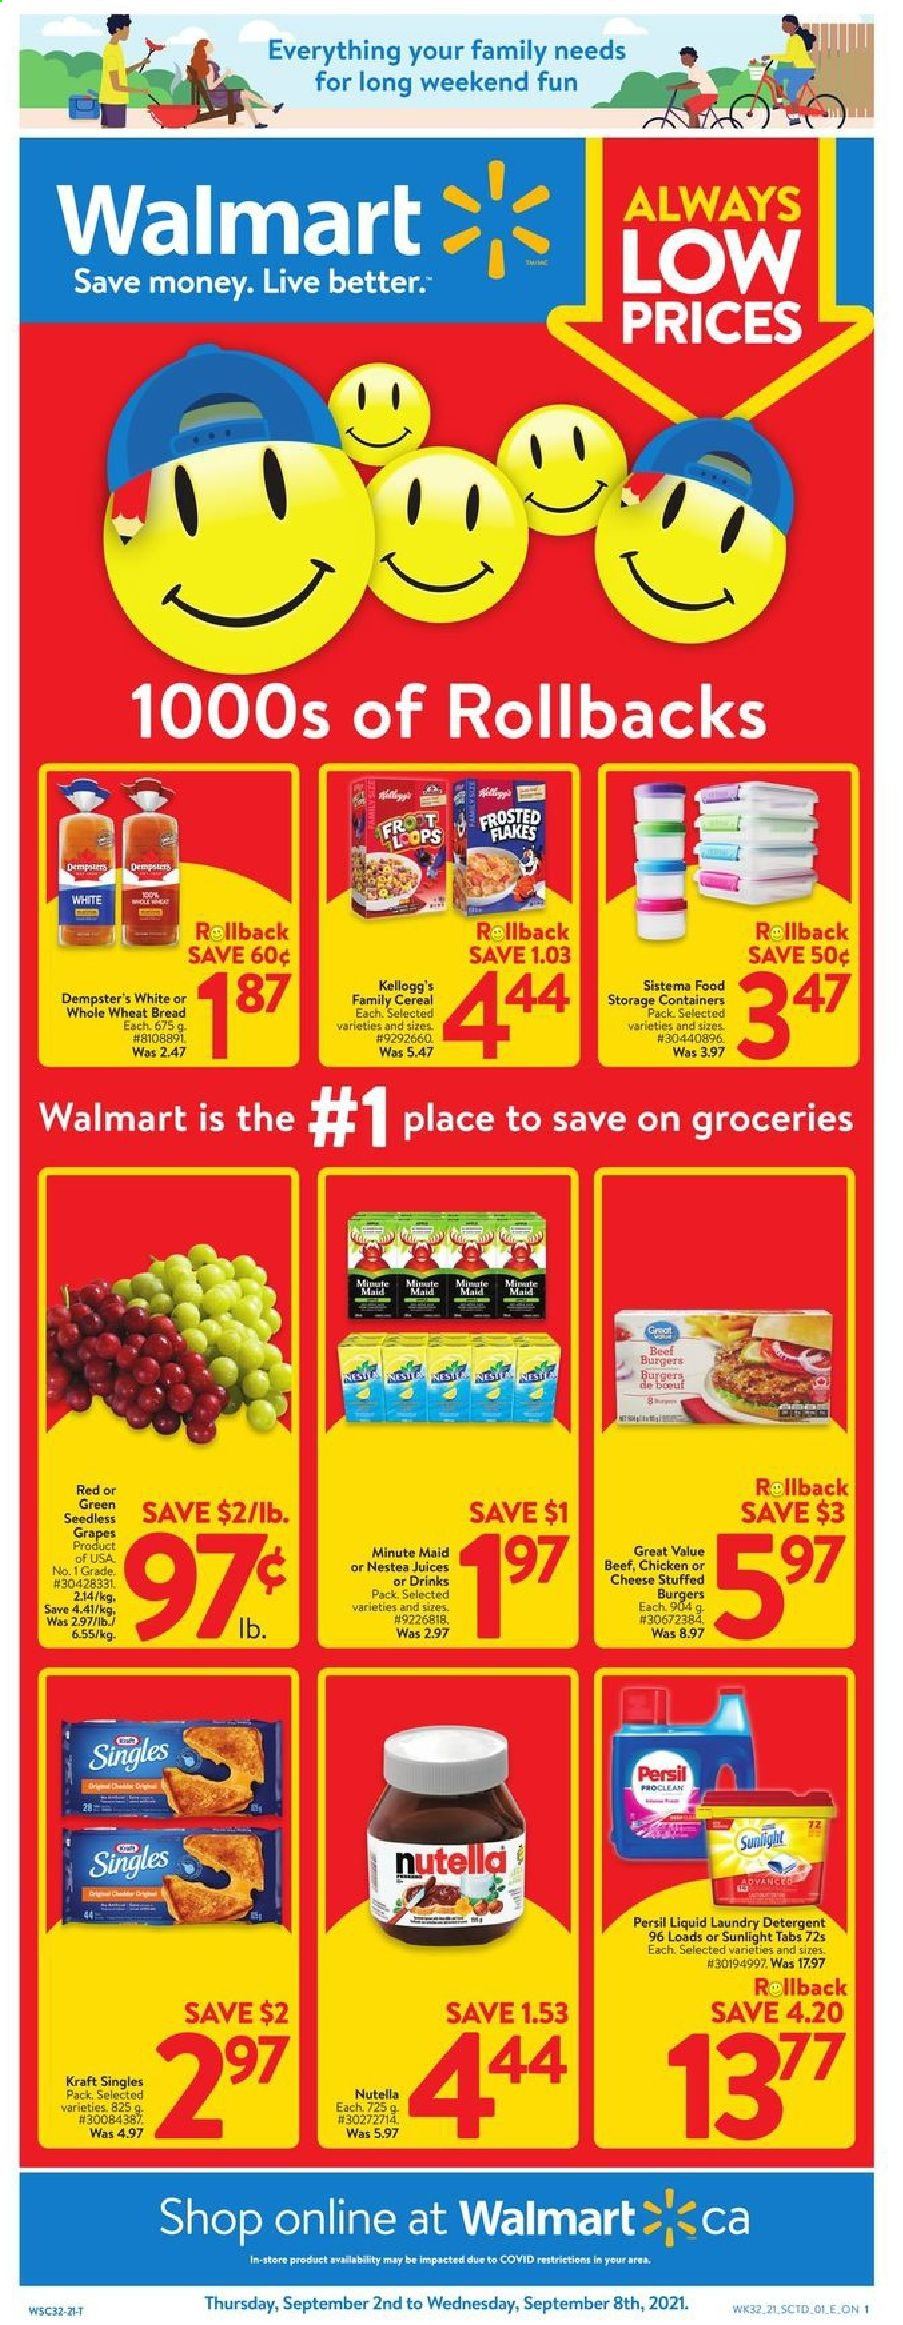 thumbnail - Circulaire Walmart - 02 Septembre 2021 - 08 Septembre 2021 - Produits soldés - persil, Sunlight, Kellogg's, Always, Nutella, détergent. Page 1.